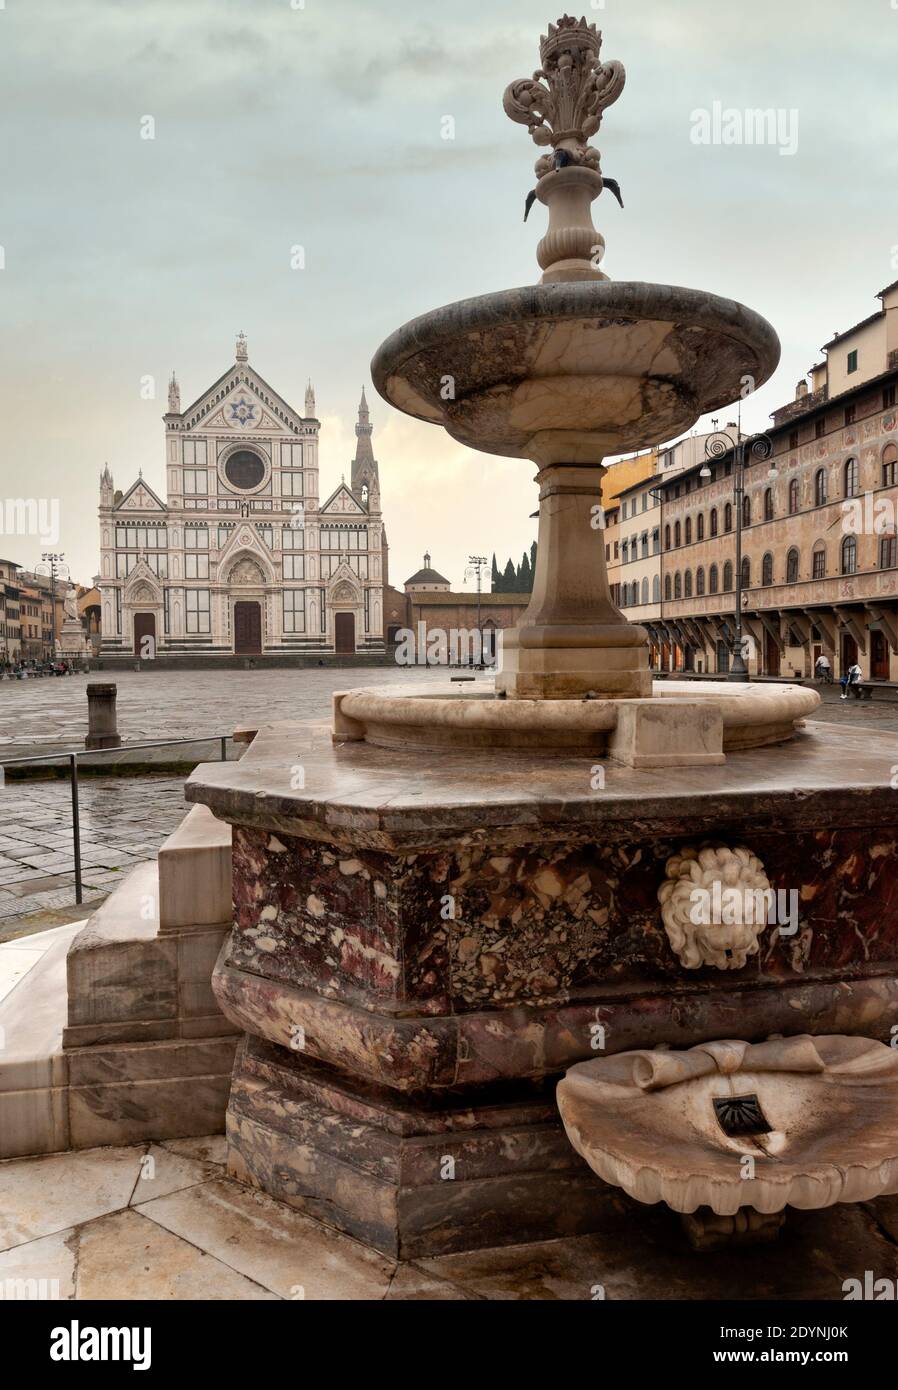 La fontana con base ottagonale, Piazza Santa Croce, Firenze. La facciata della Basilica (sullo sfondo) sul lato opposto della piazza. Foto Stock